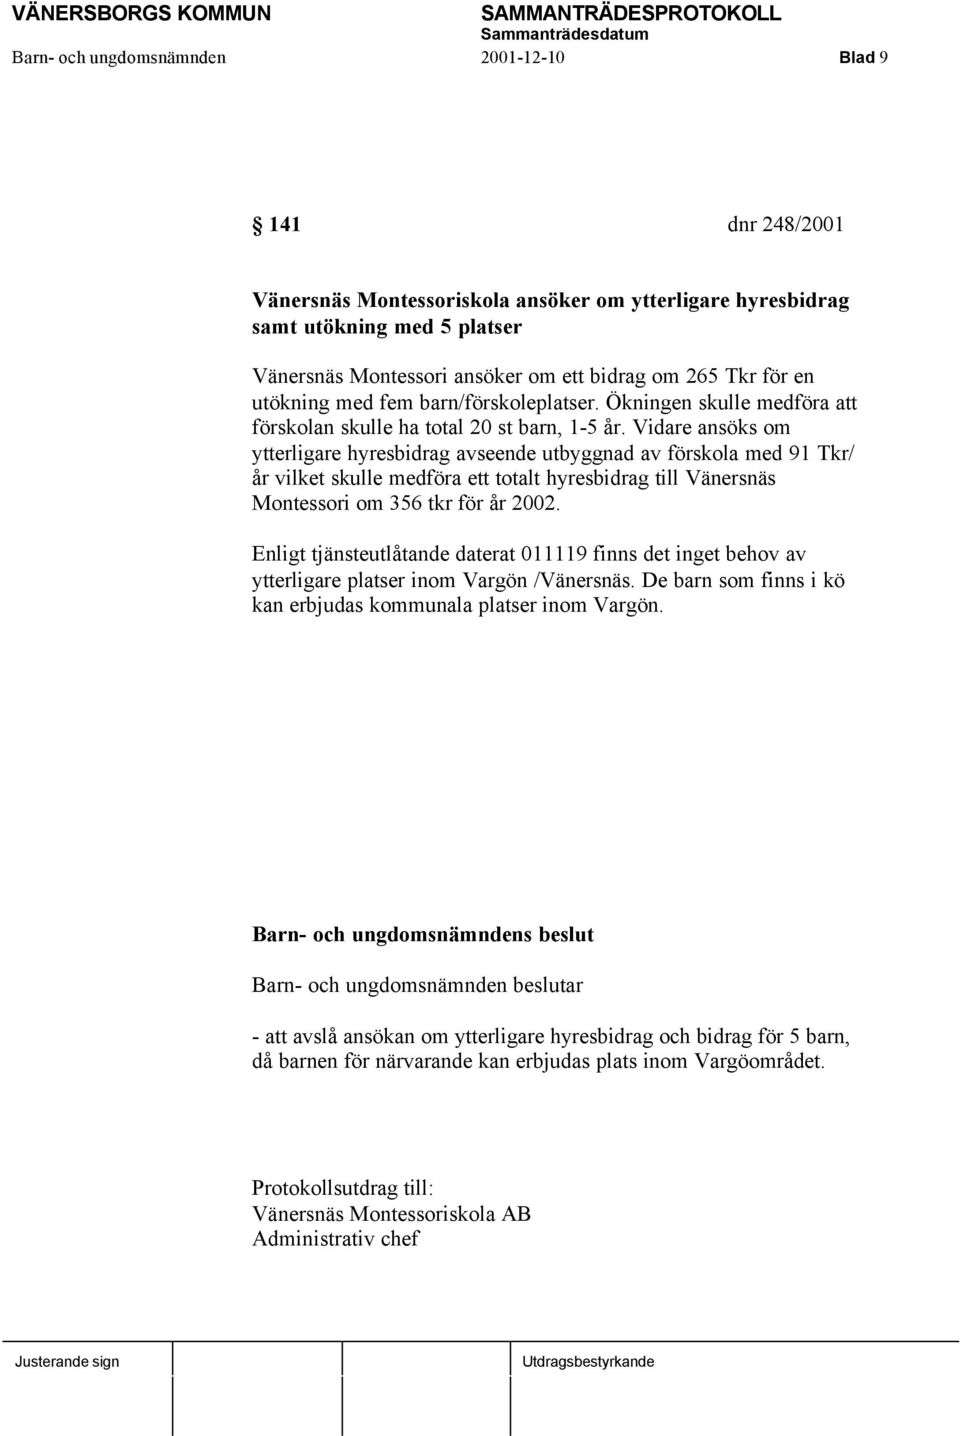 Vidare ansöks om ytterligare hyresbidrag avseende utbyggnad av förskola med 91 Tkr/ år vilket skulle medföra ett totalt hyresbidrag till Vänersnäs Montessori om 356 tkr för år 2002.